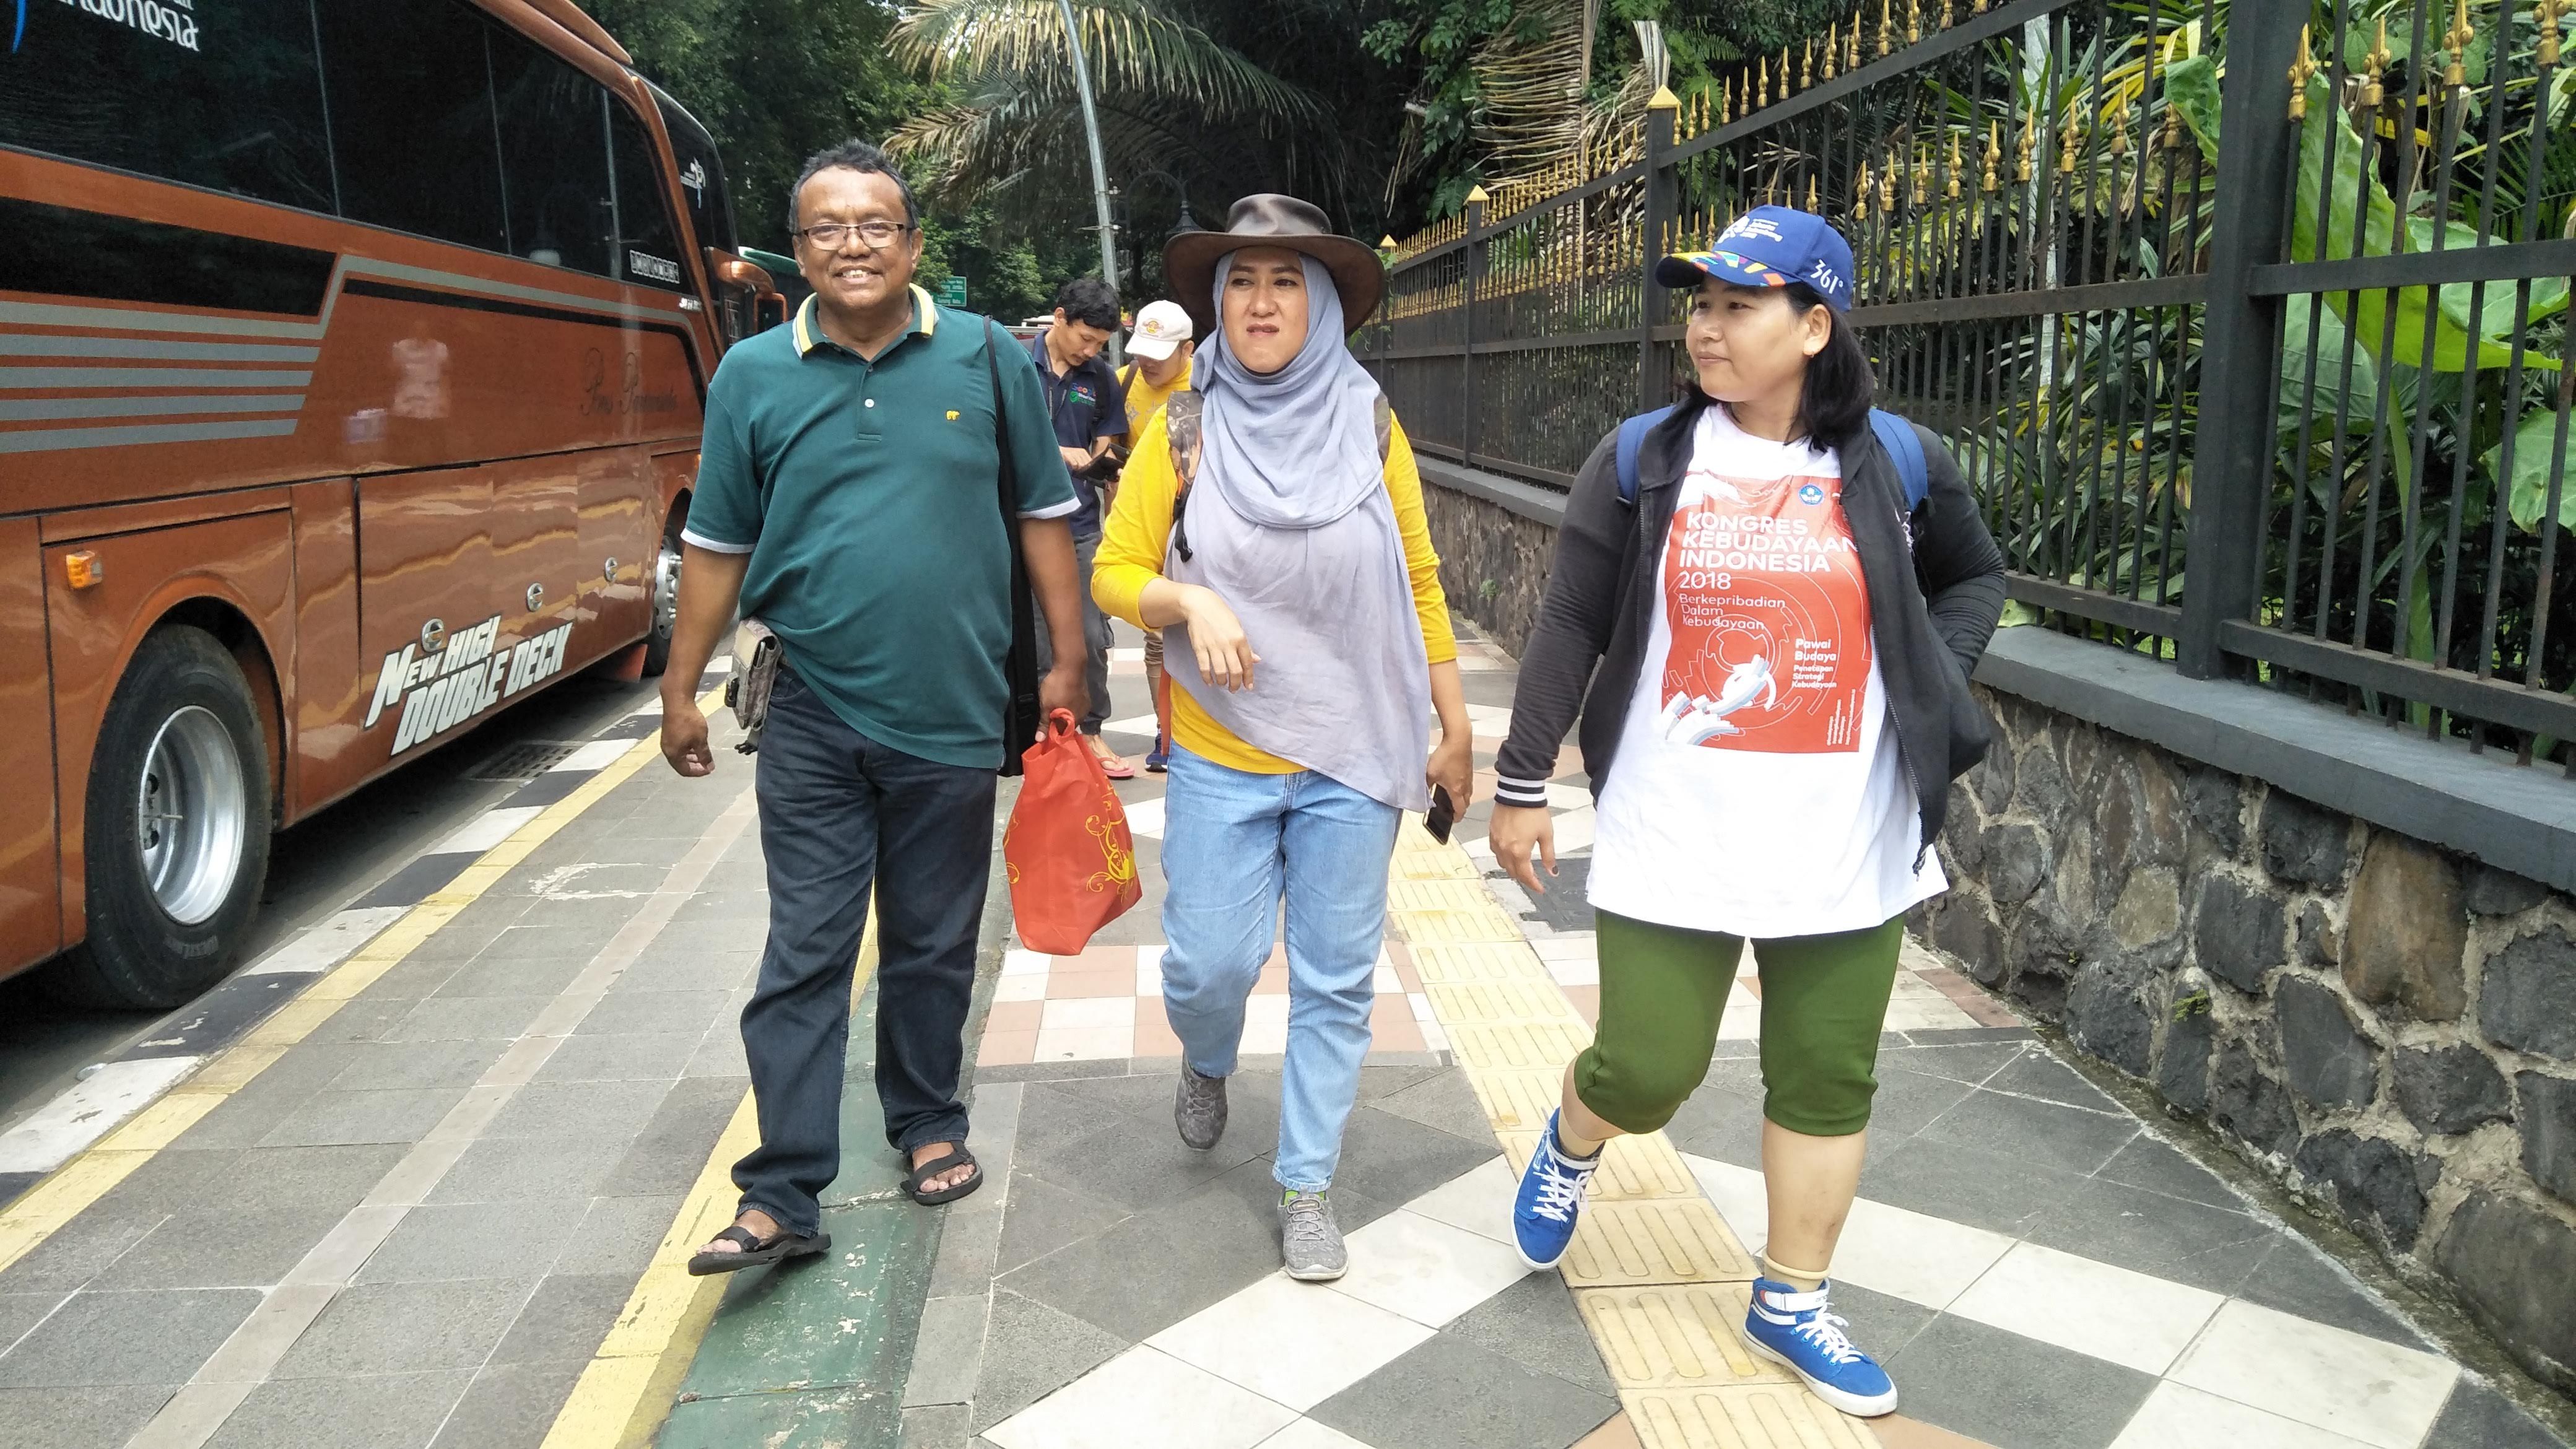 Tiga orang peserta berjalan di sisi depan menuju lokasi tujuan. Credit to Suparno Jumar.